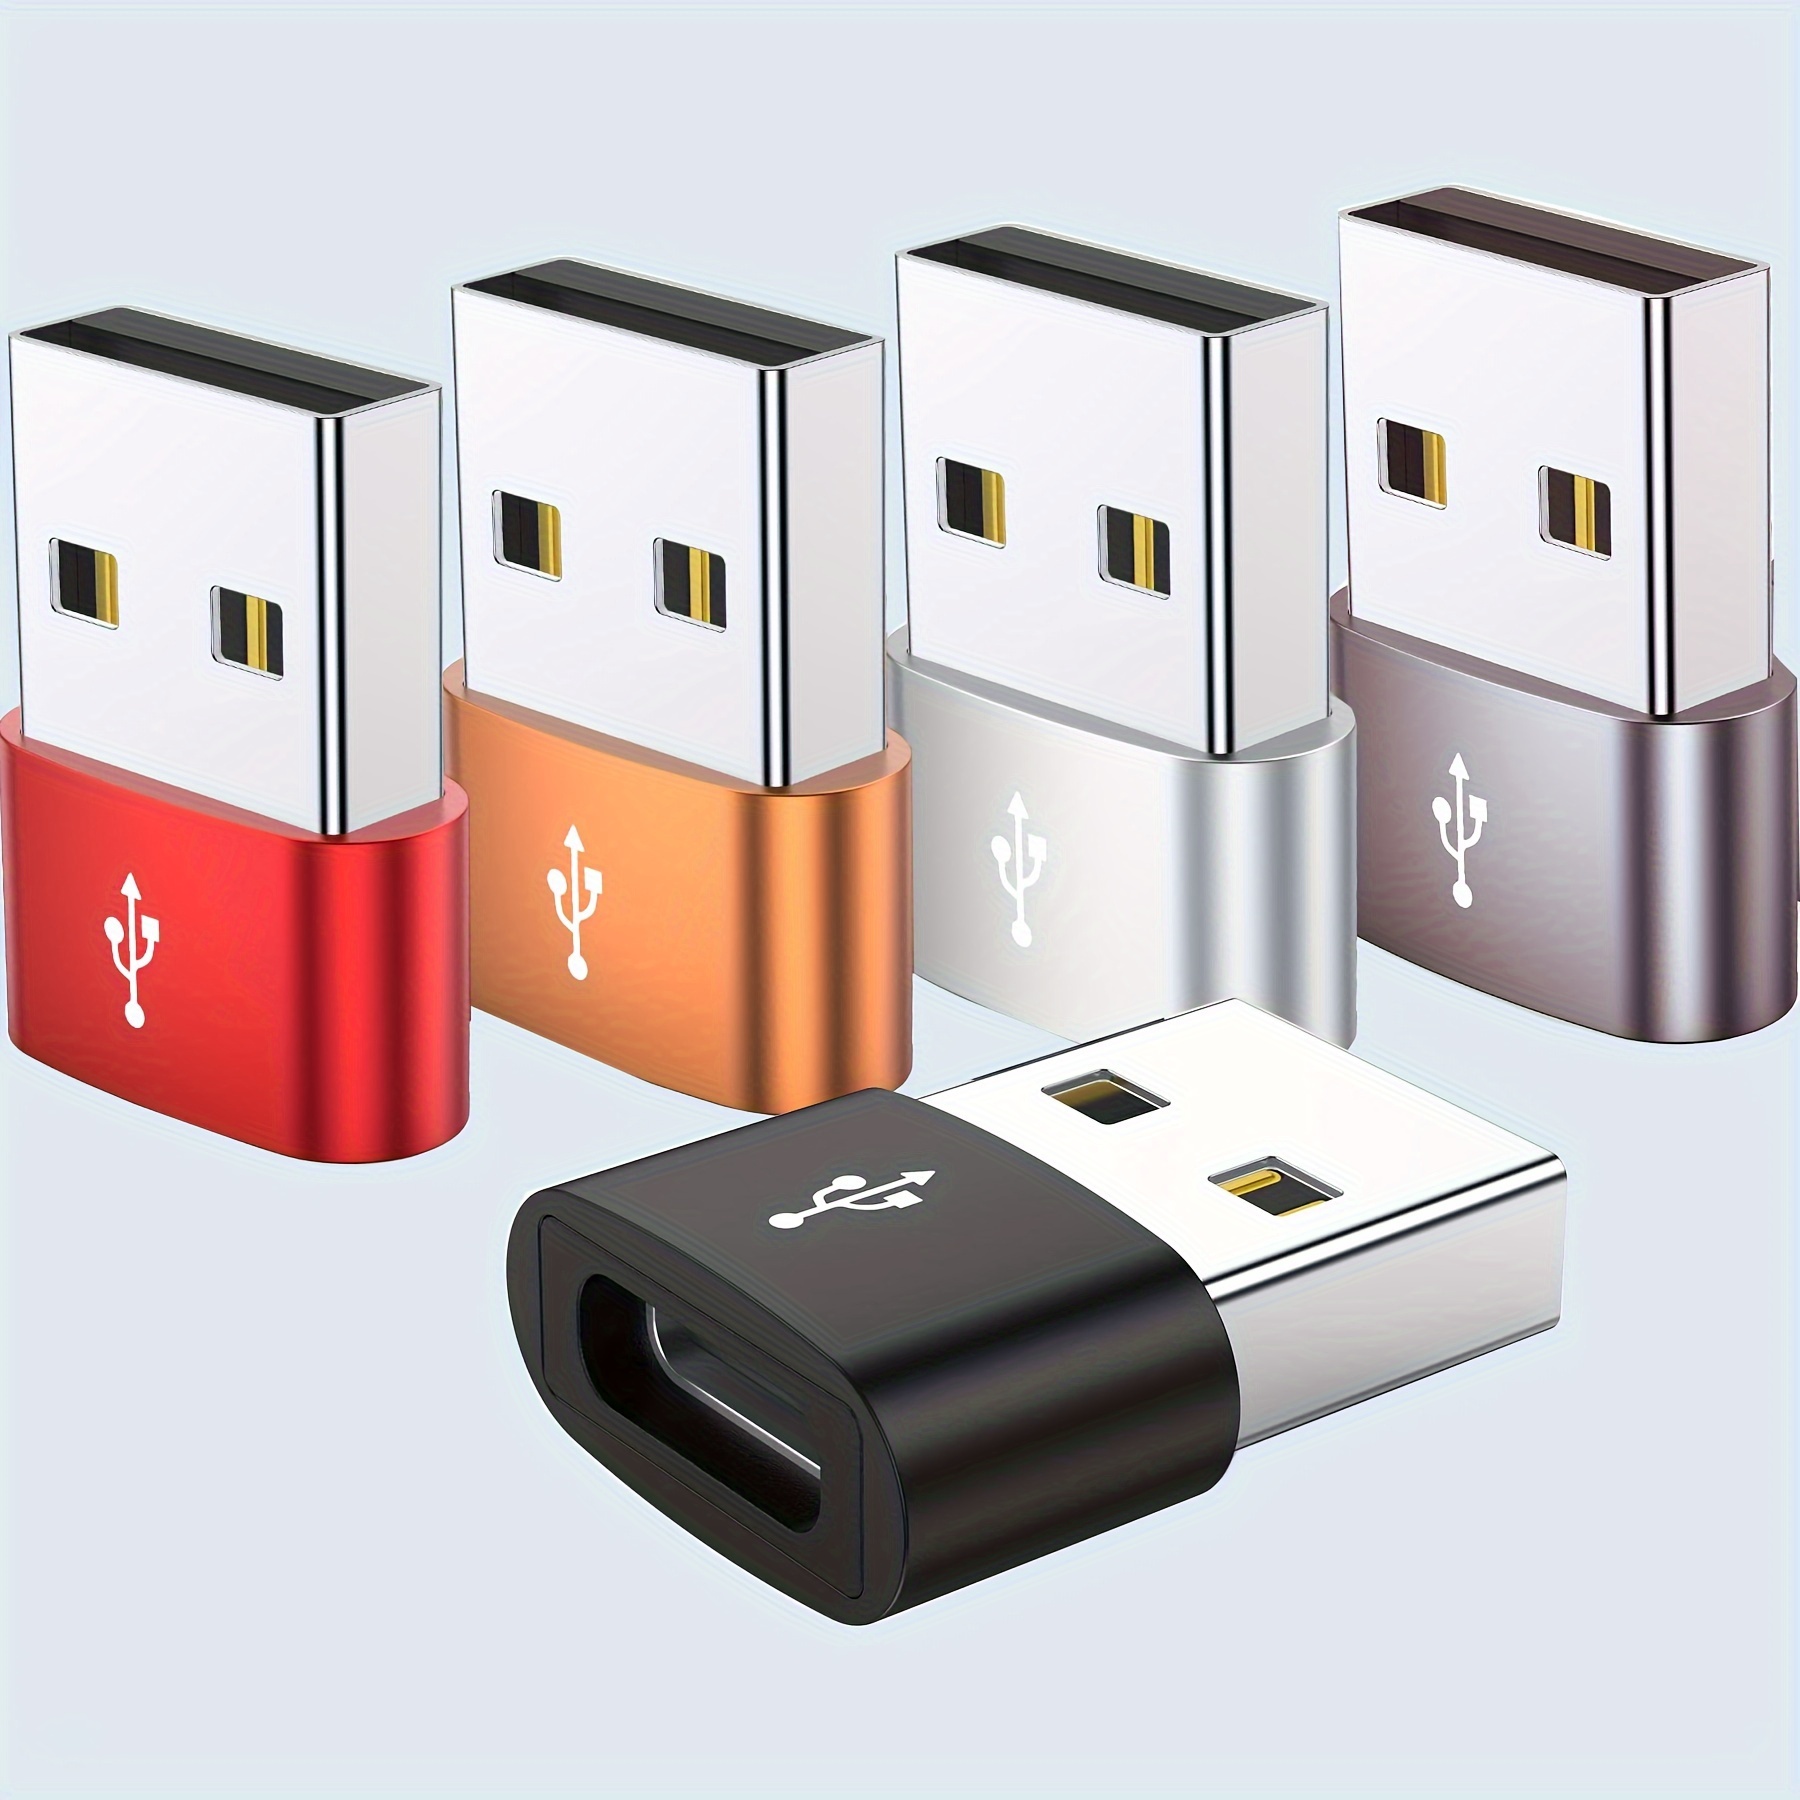 Adaptateurs USB C (Lot de 4), Adaptateur USB C vers USB 3.0 OTG, Adaptateur  Micro USB vers USB C Compatible avec MacBook Pro, Samsung Galaxy